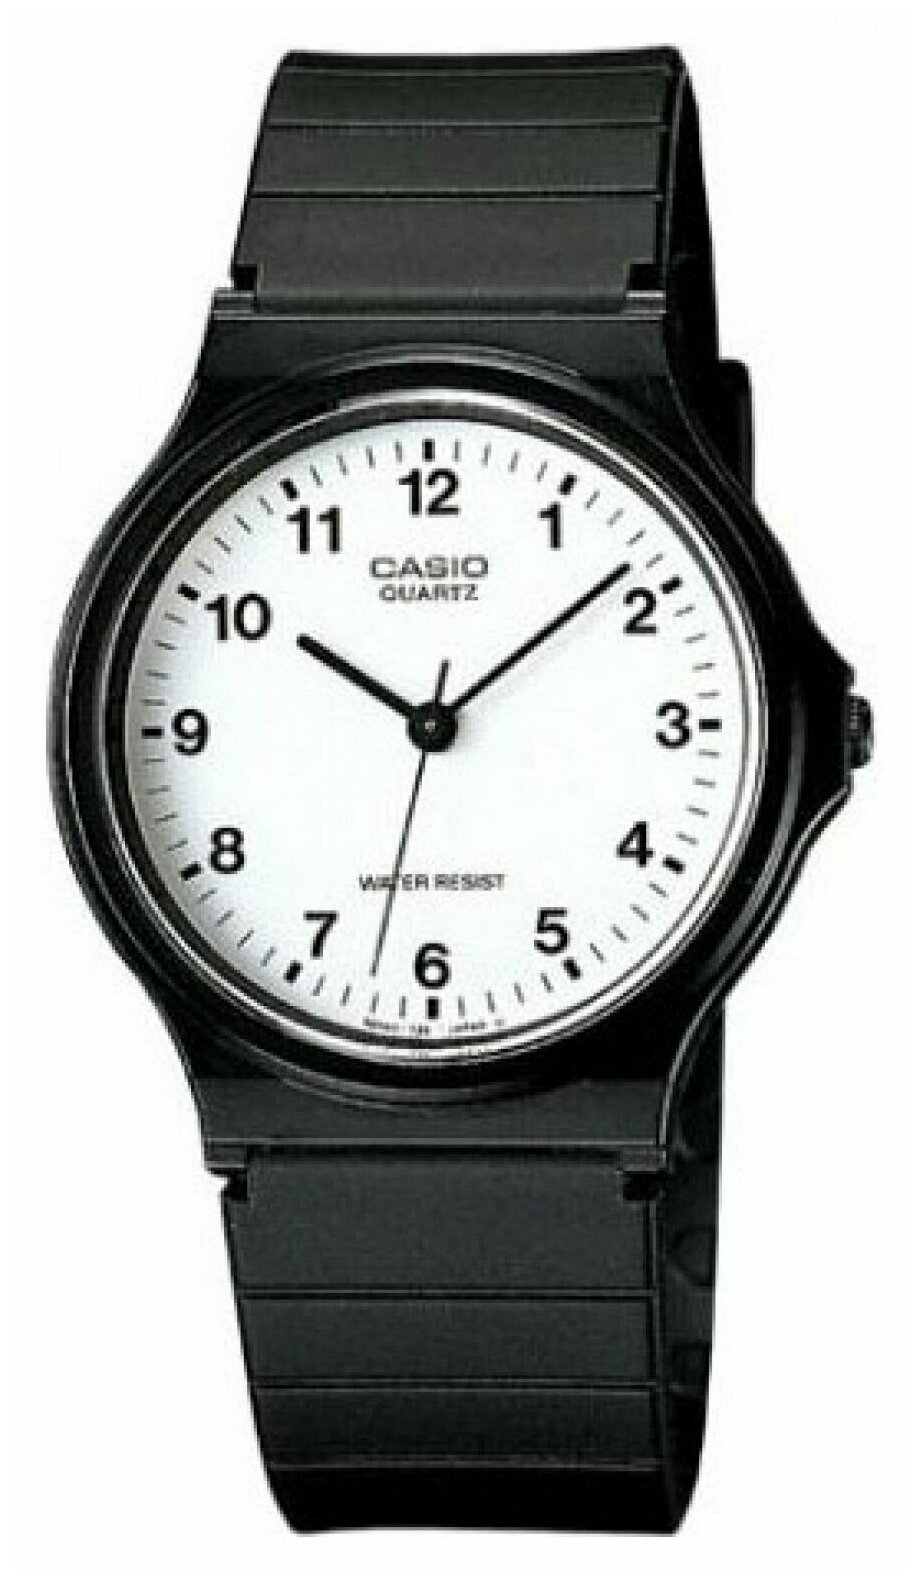 Наручные часы CASIO MQ-24-7B